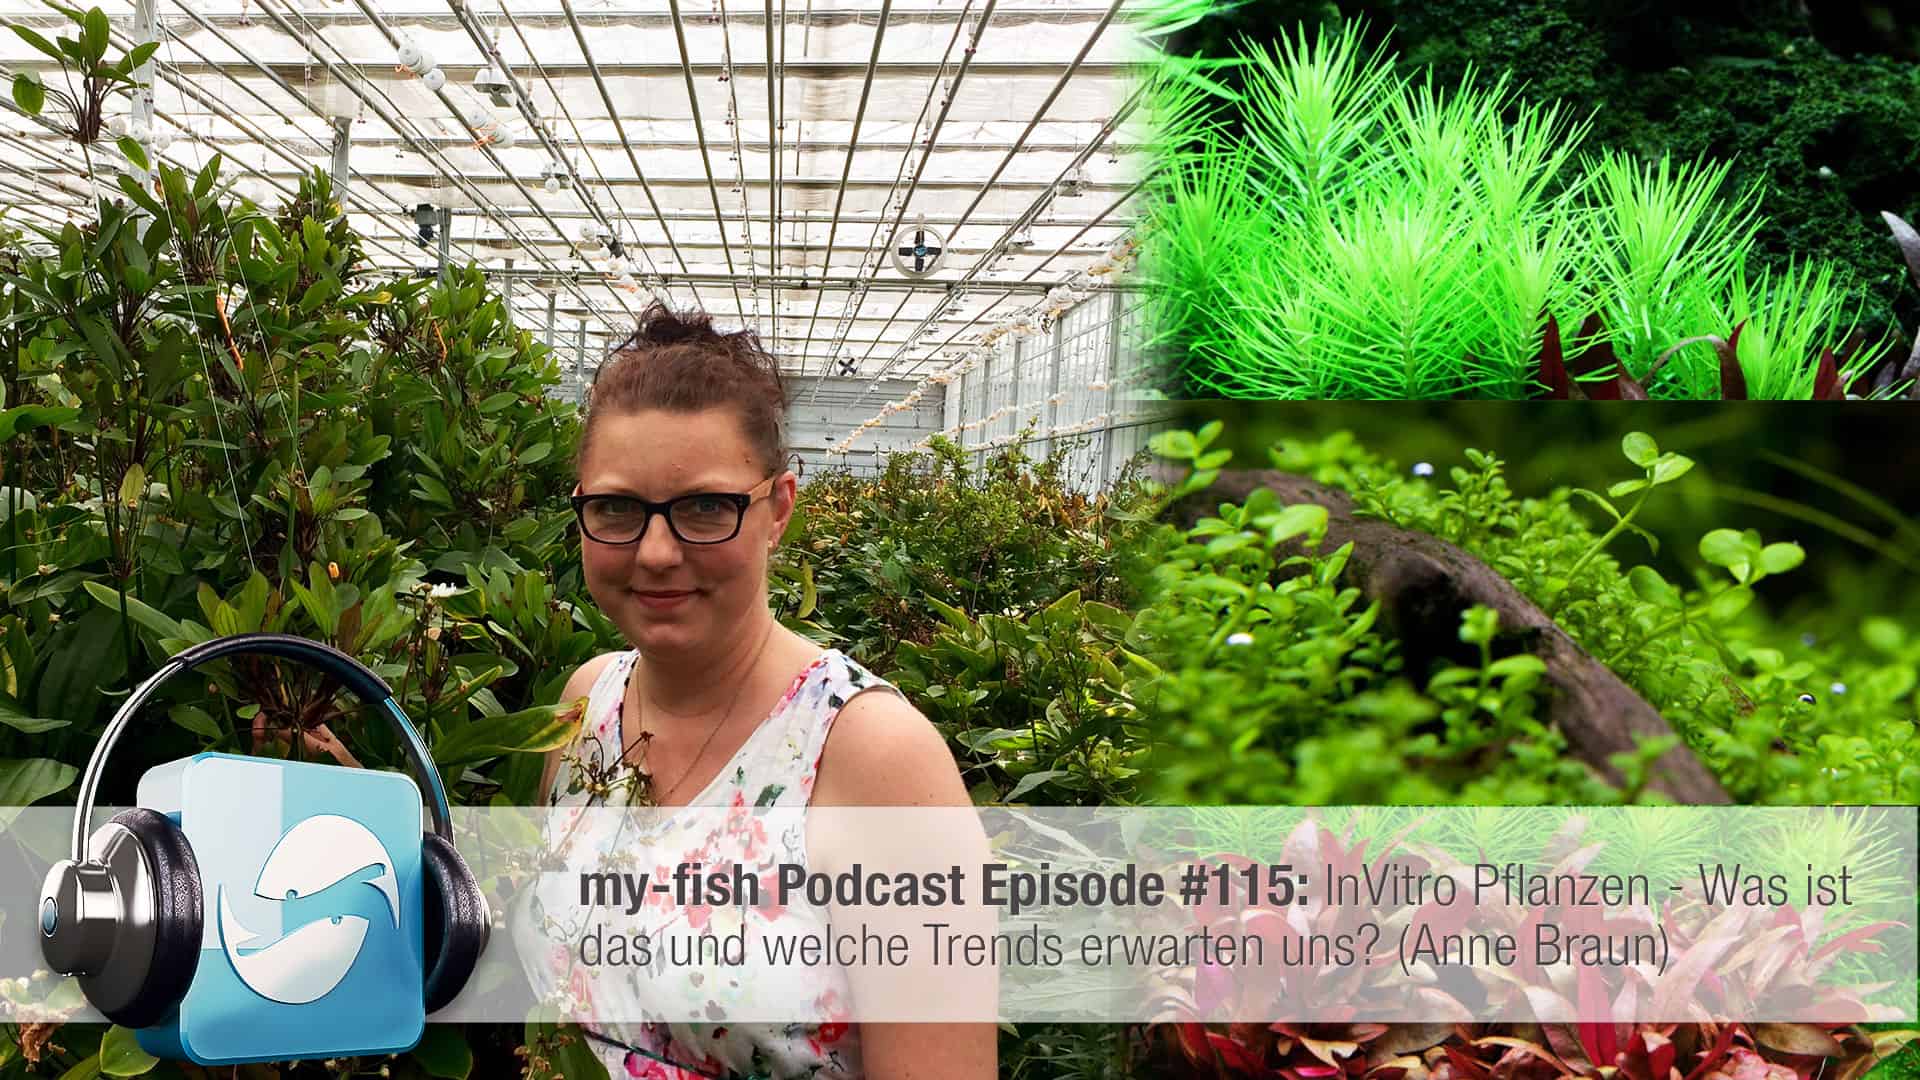 Podcast Episode #115: InVitro Pflanzen - Was ist das und welche Trends erwarten uns? (Anne Braun) 1